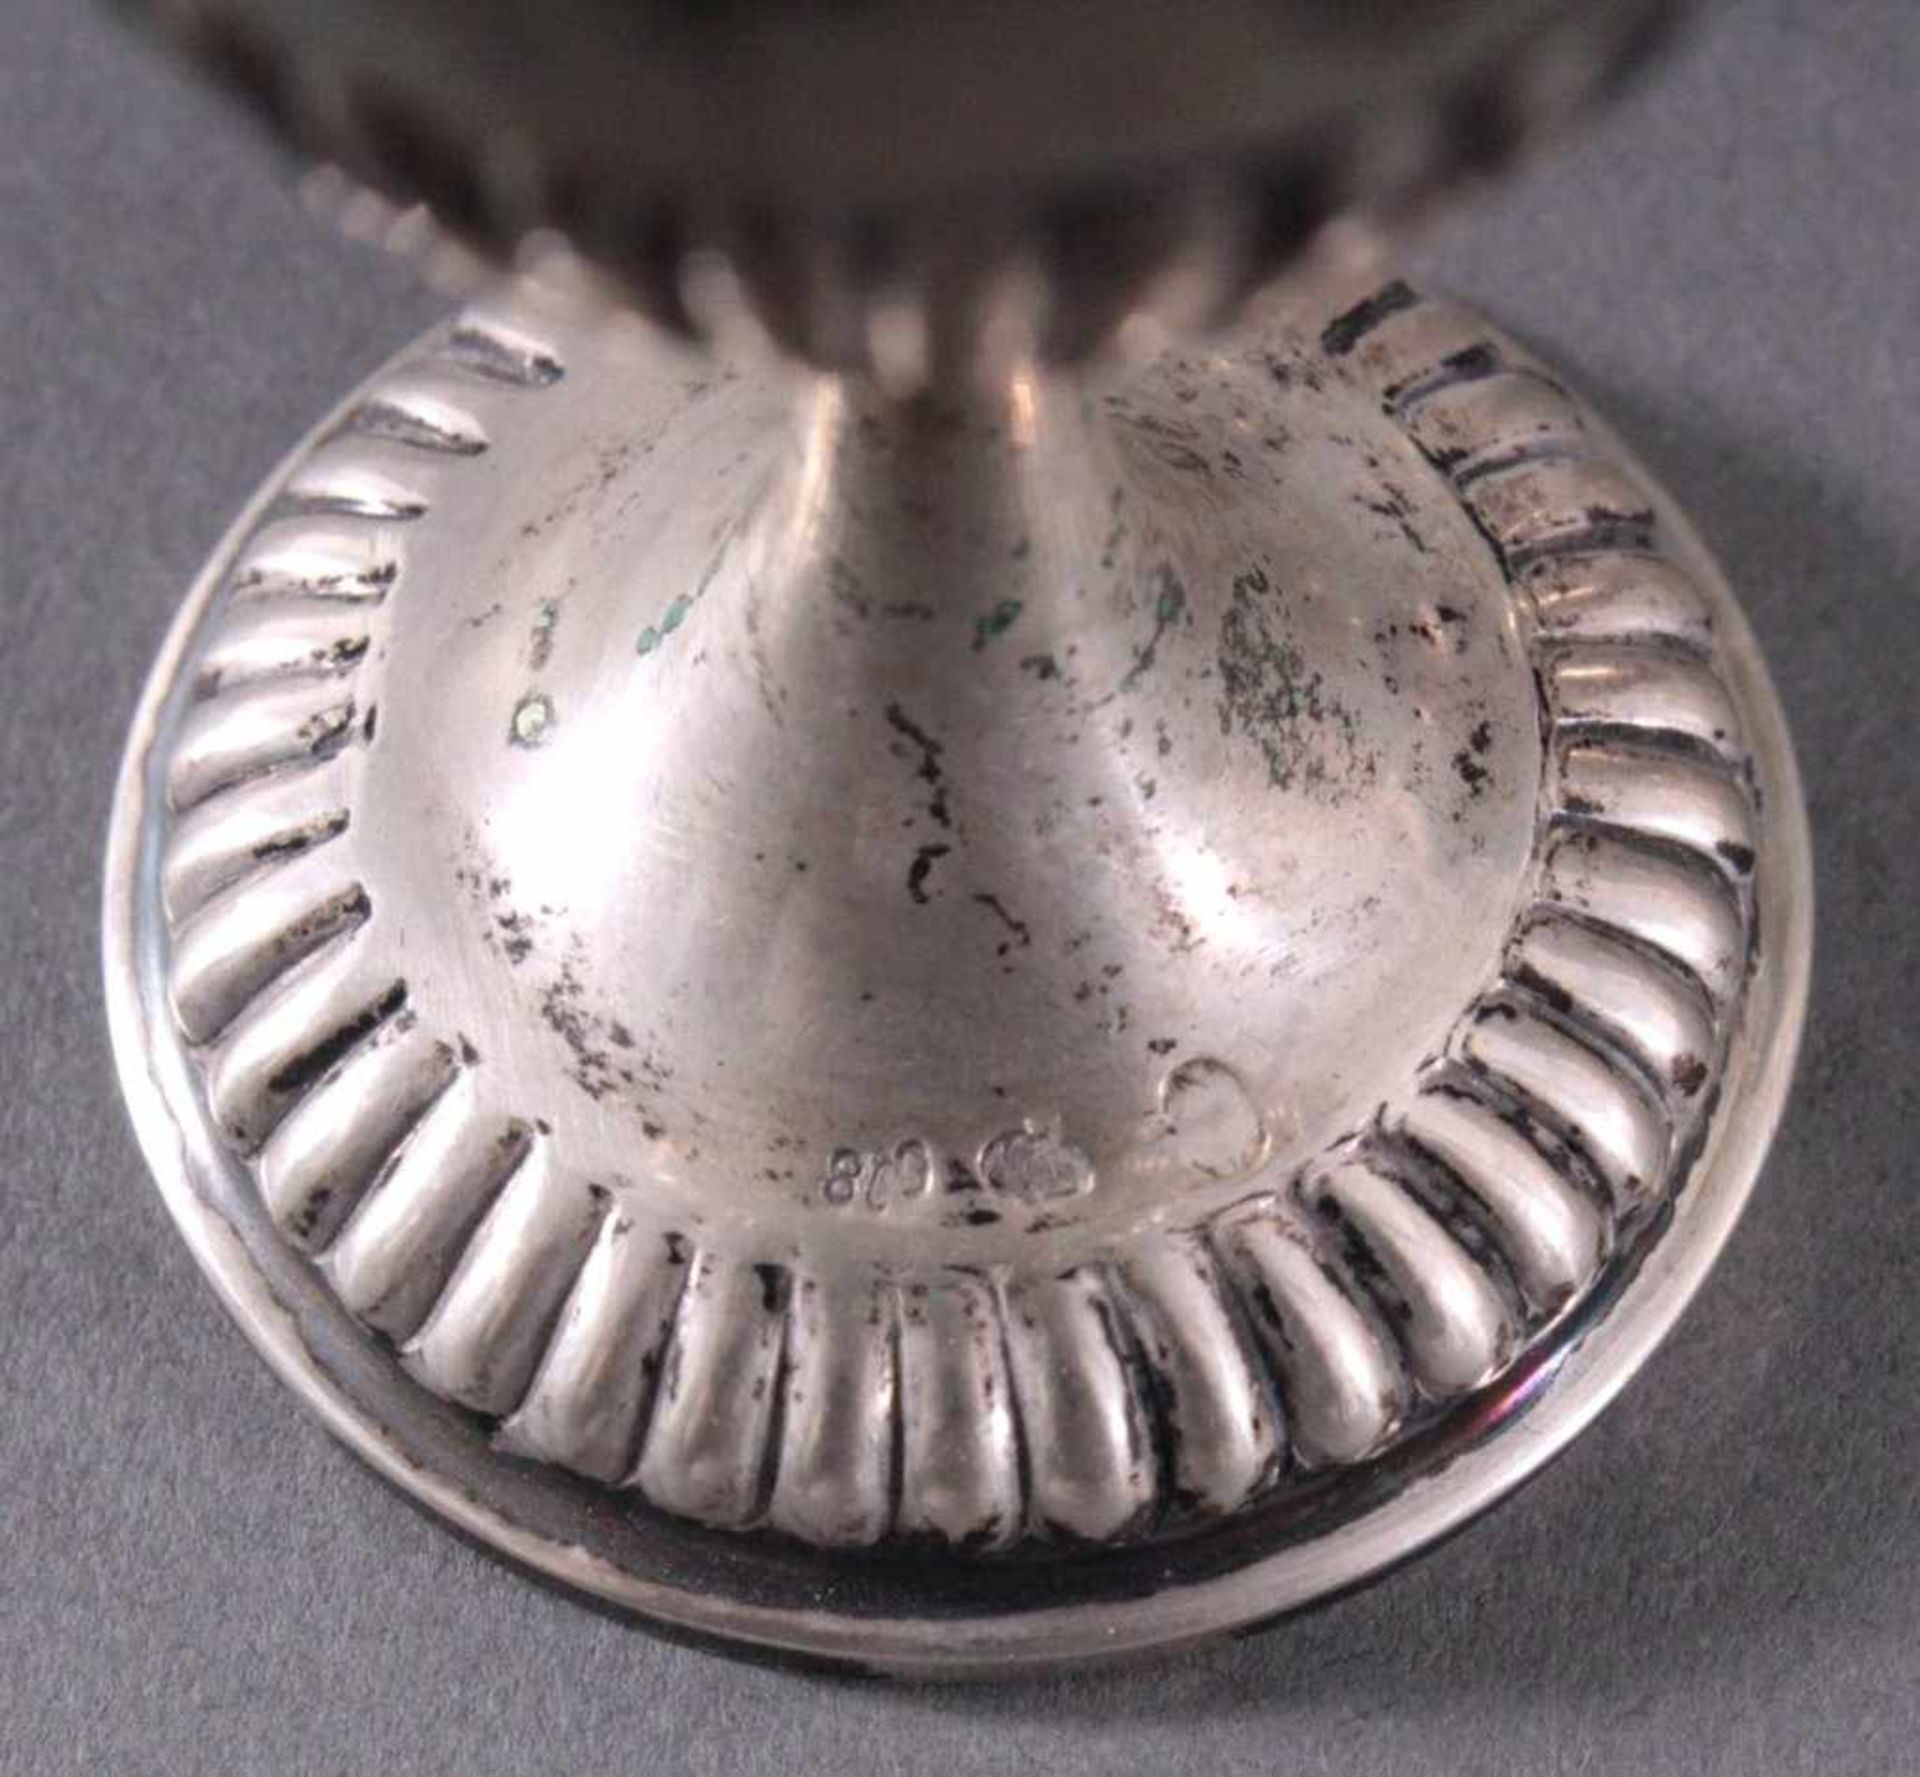 4 silberne Eierbecher um 1900Deutsche Punze Sichel und Krone 800er Silber, ca. Höhe 7 cm,191 g. - Bild 3 aus 4